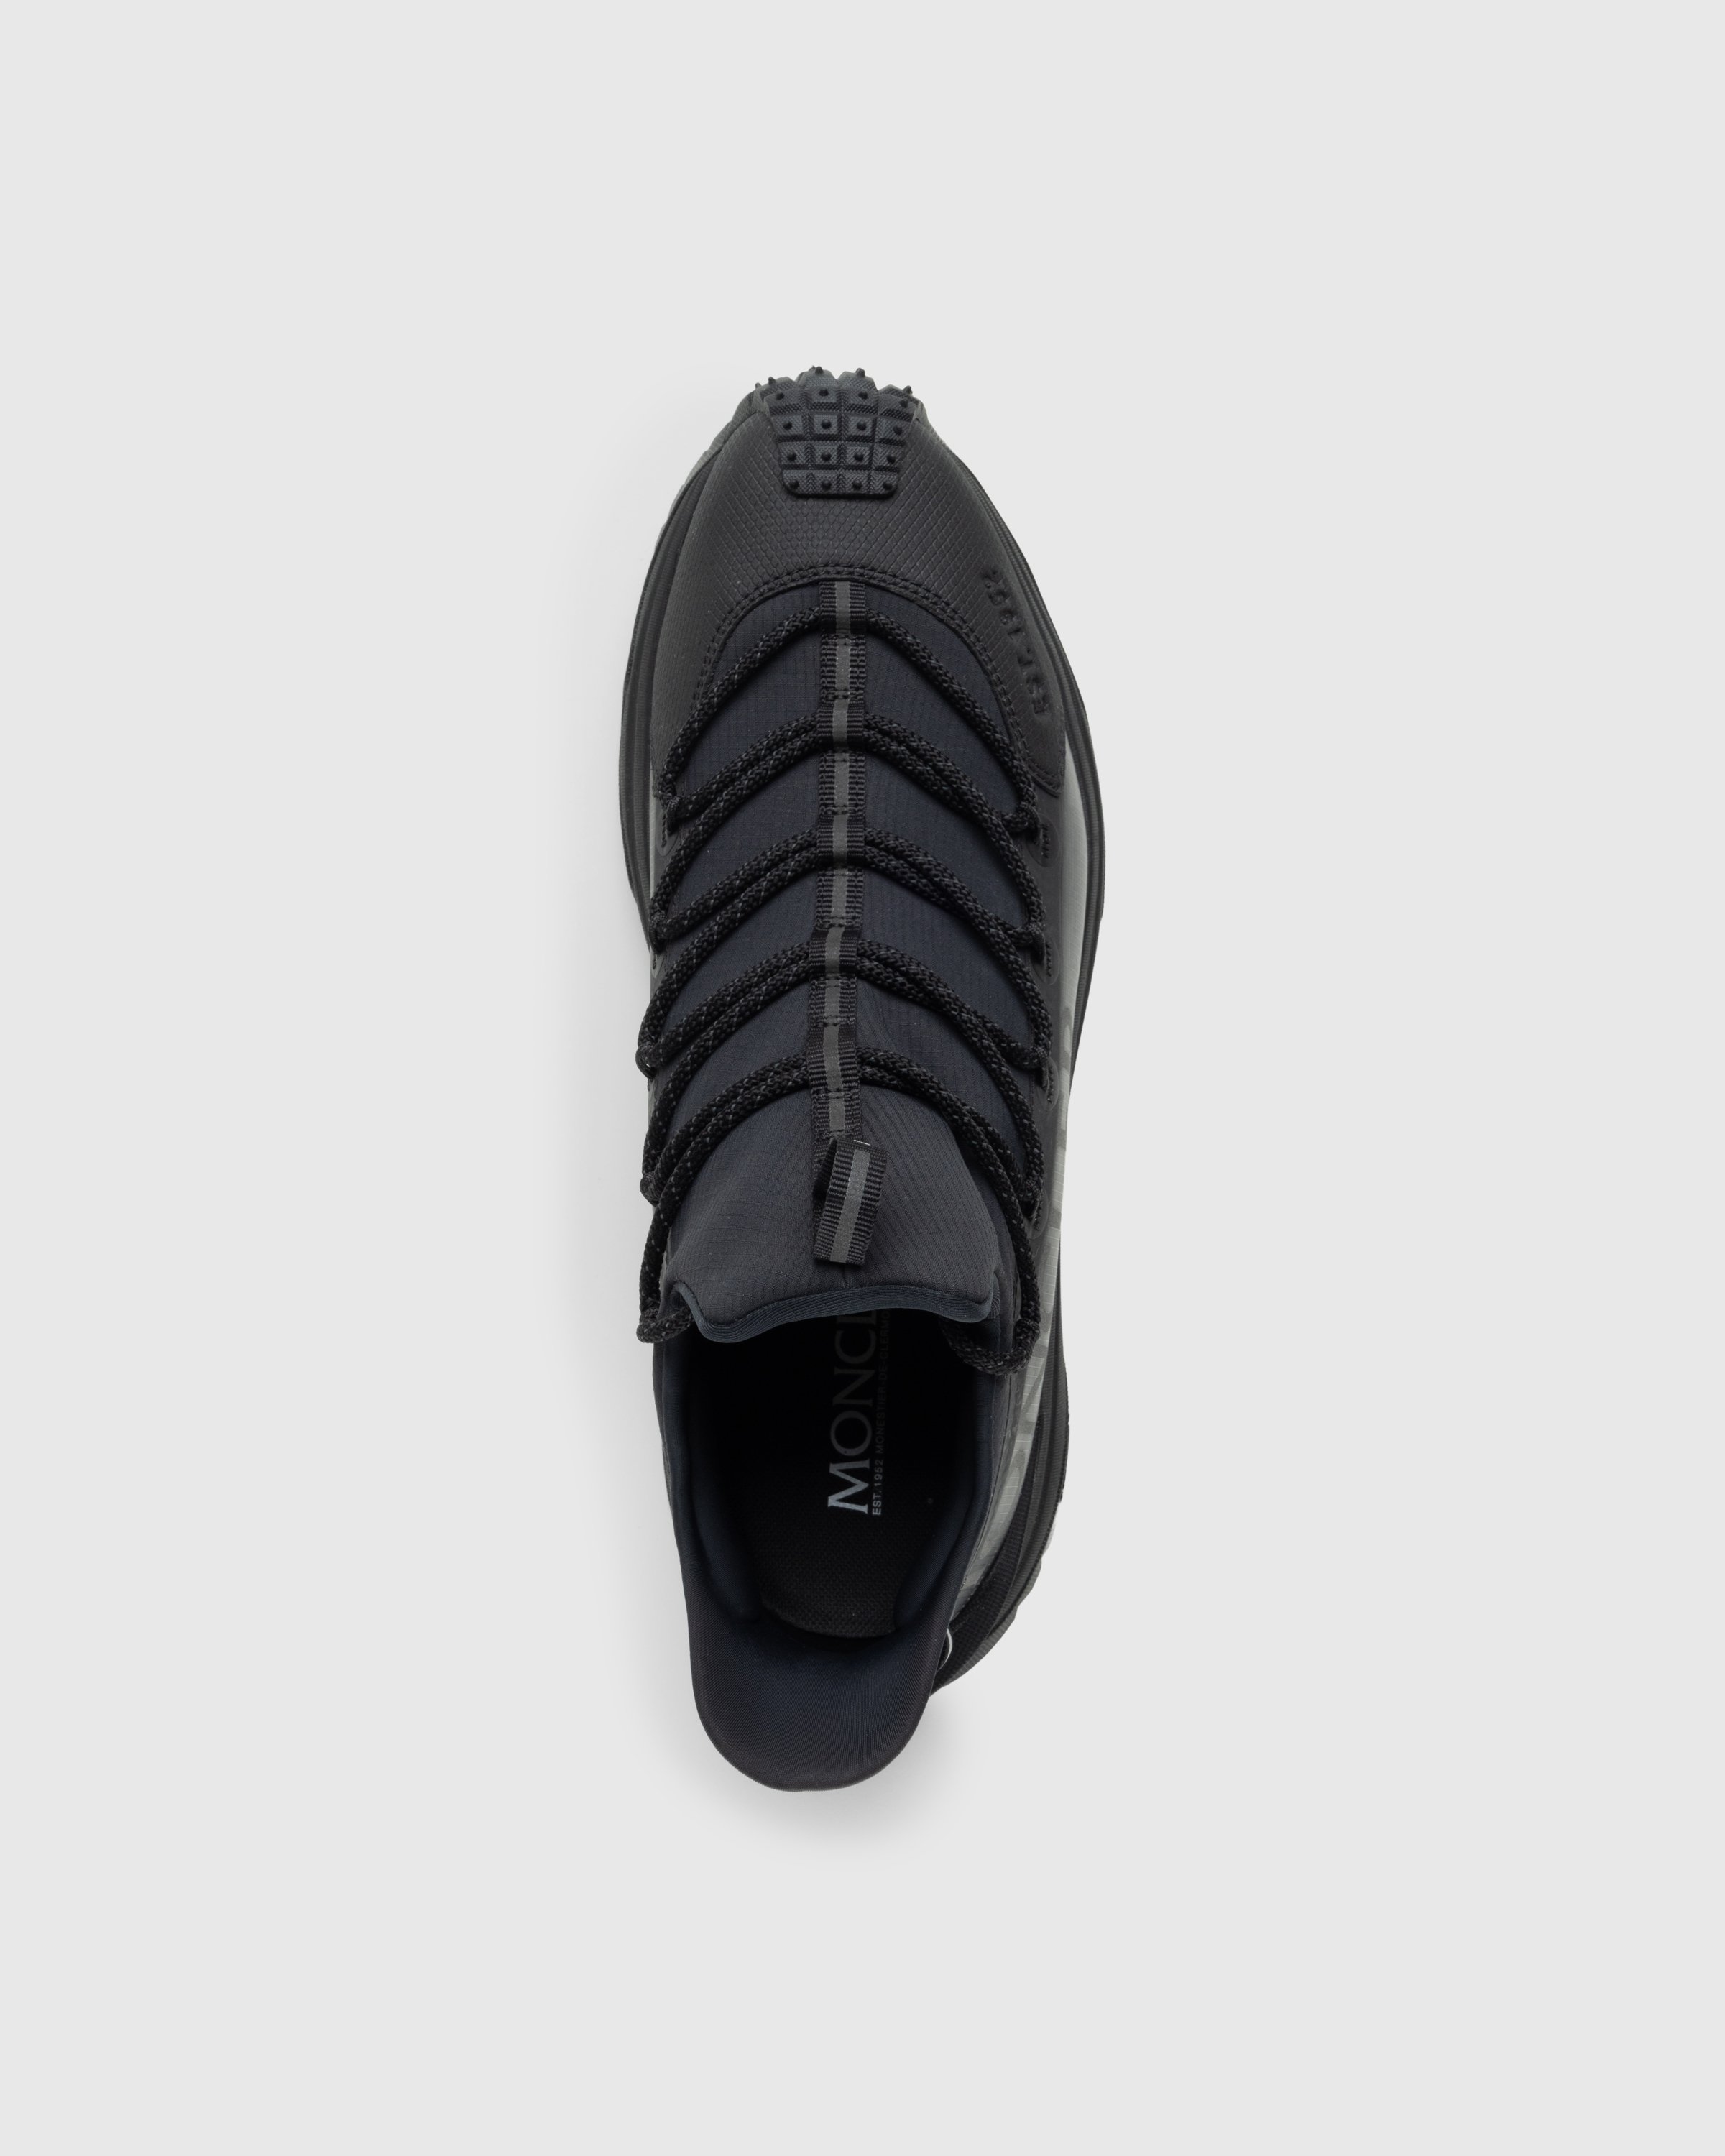 Moncler - Trailgrip Lite 2 Sneakers Black - Footwear - Black - Image 5